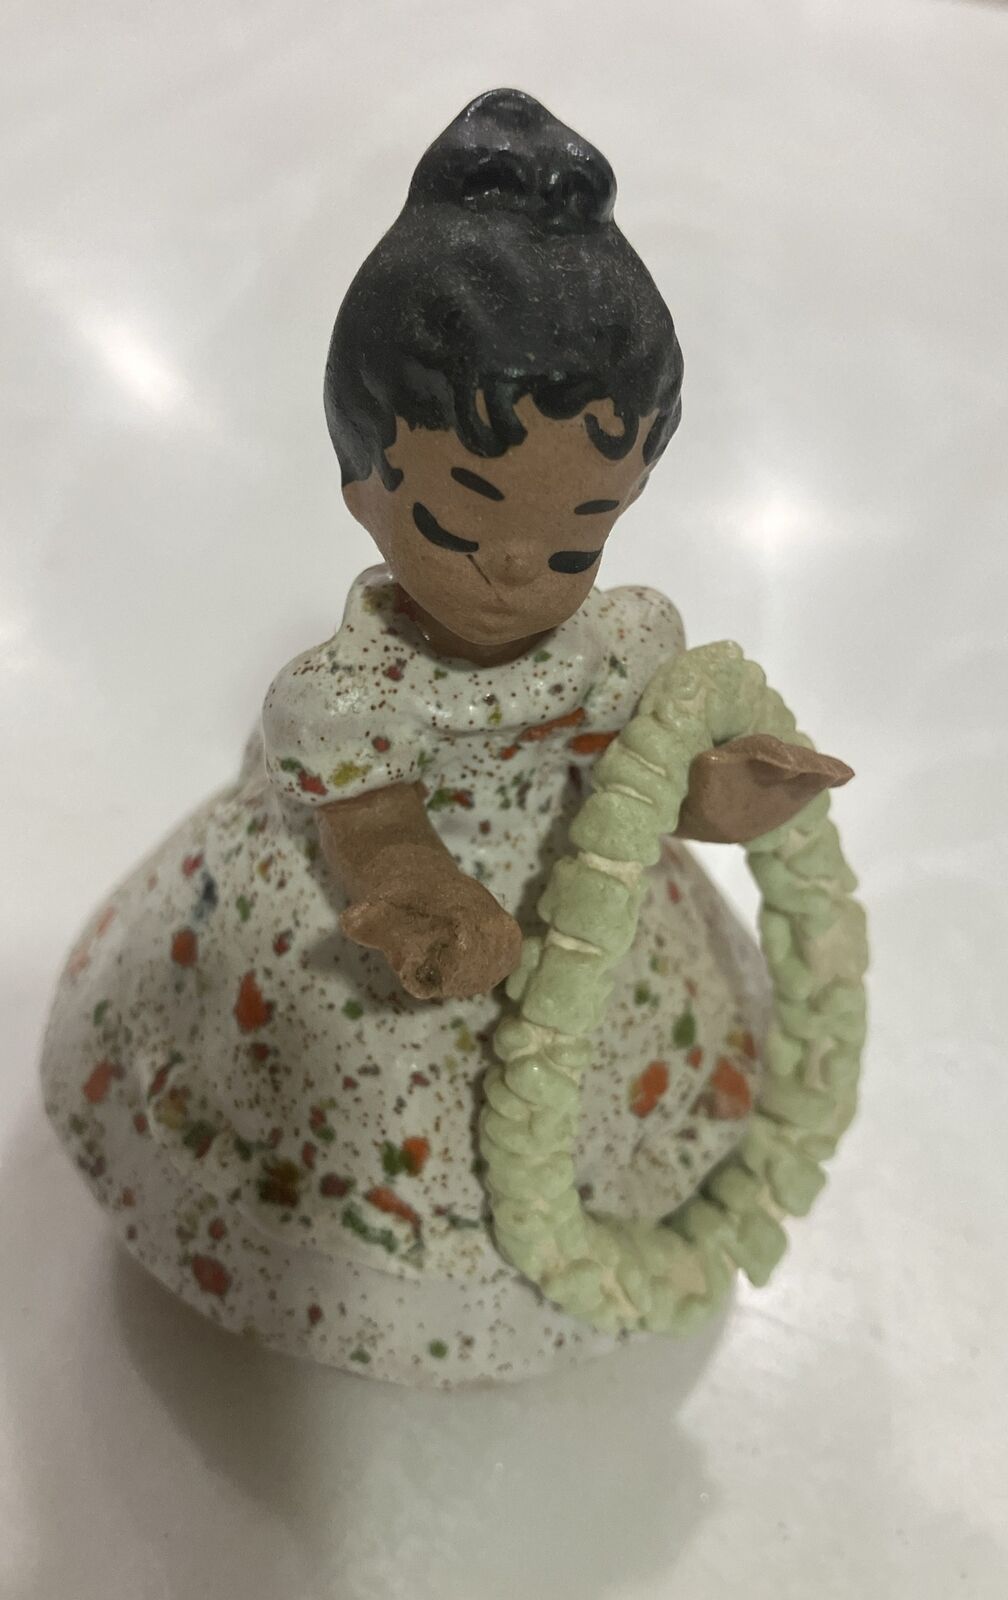  Vintage Ethnic Young Hawaiian Girl figurine.